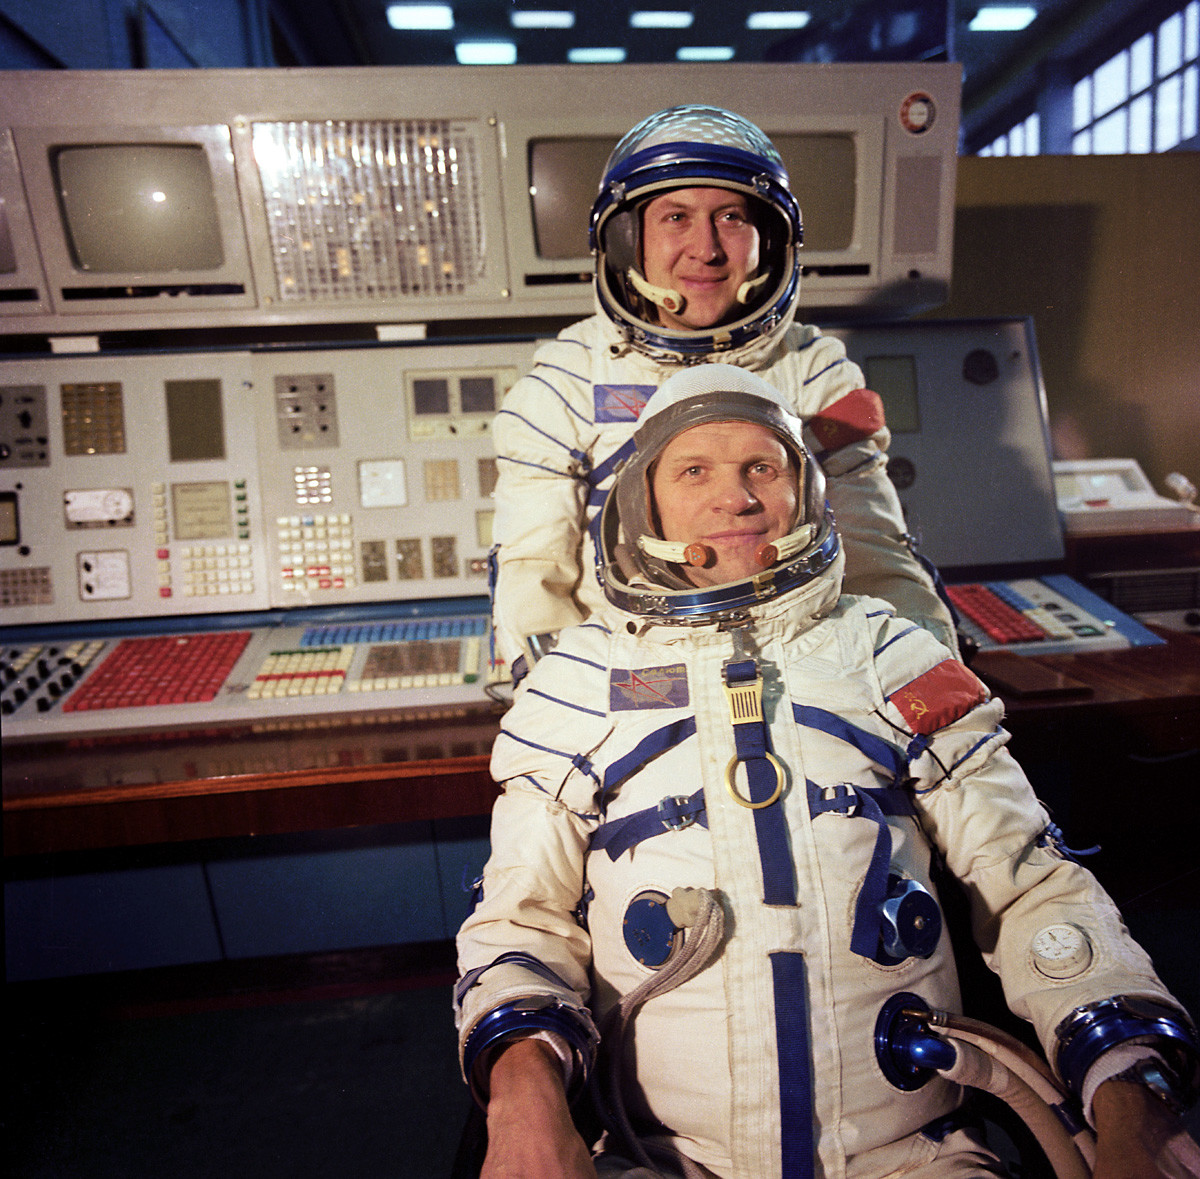 「ソユーズ28号」 国際スペース・ミッションの参加者である宇宙飛行士。研究宇宙飛行士のウラジミール・レメク（チェコスロバキア）、ミッションの指導者とソ連邦英雄であるソ連の飛行士アレクセイ・グバレフ。ガガーリン宇宙飛行士訓練センターにて。ソユーズ28号は1978 年5 月2 日に発射された。